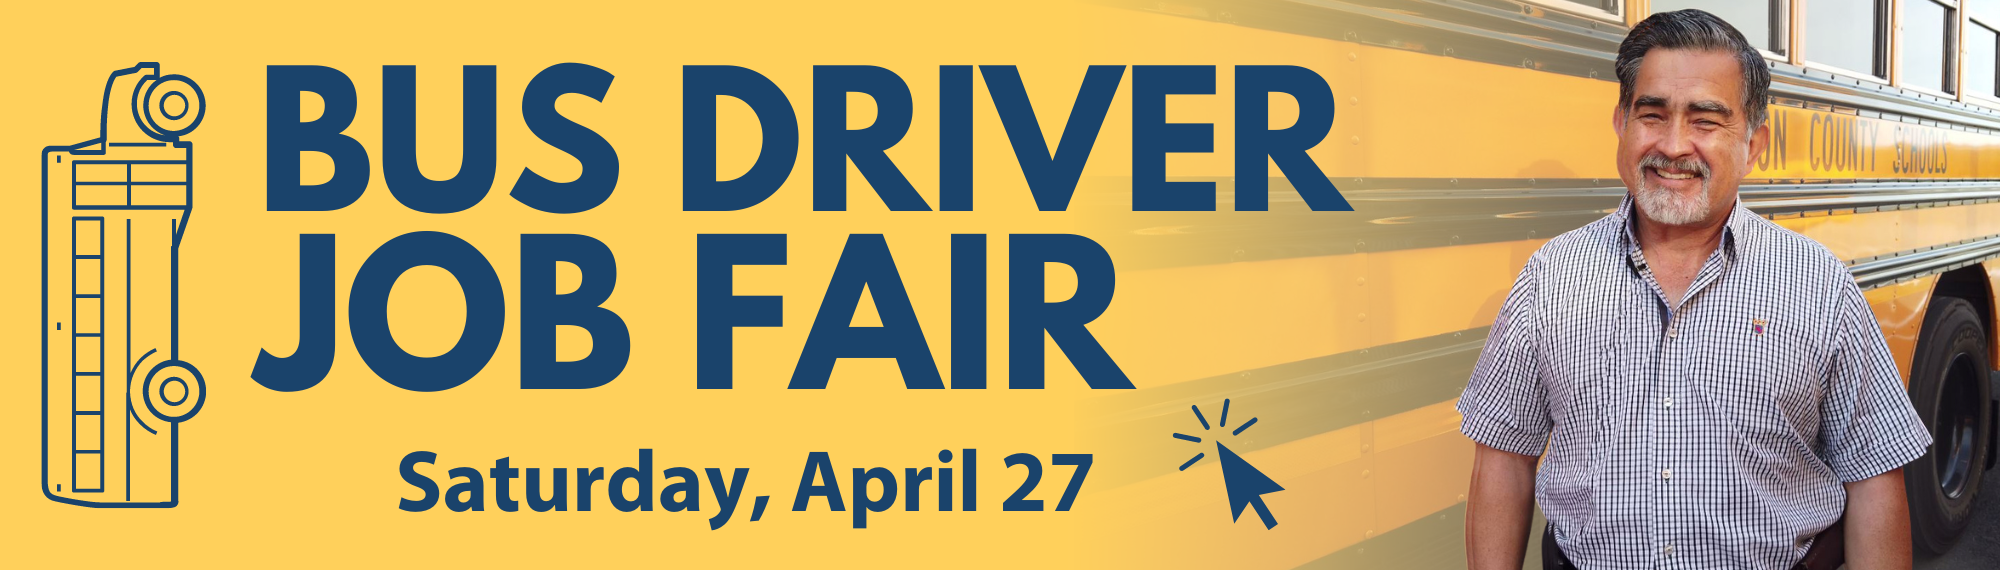 Bus Driver Job Fair - Saturday, April 27.  Click for more details.